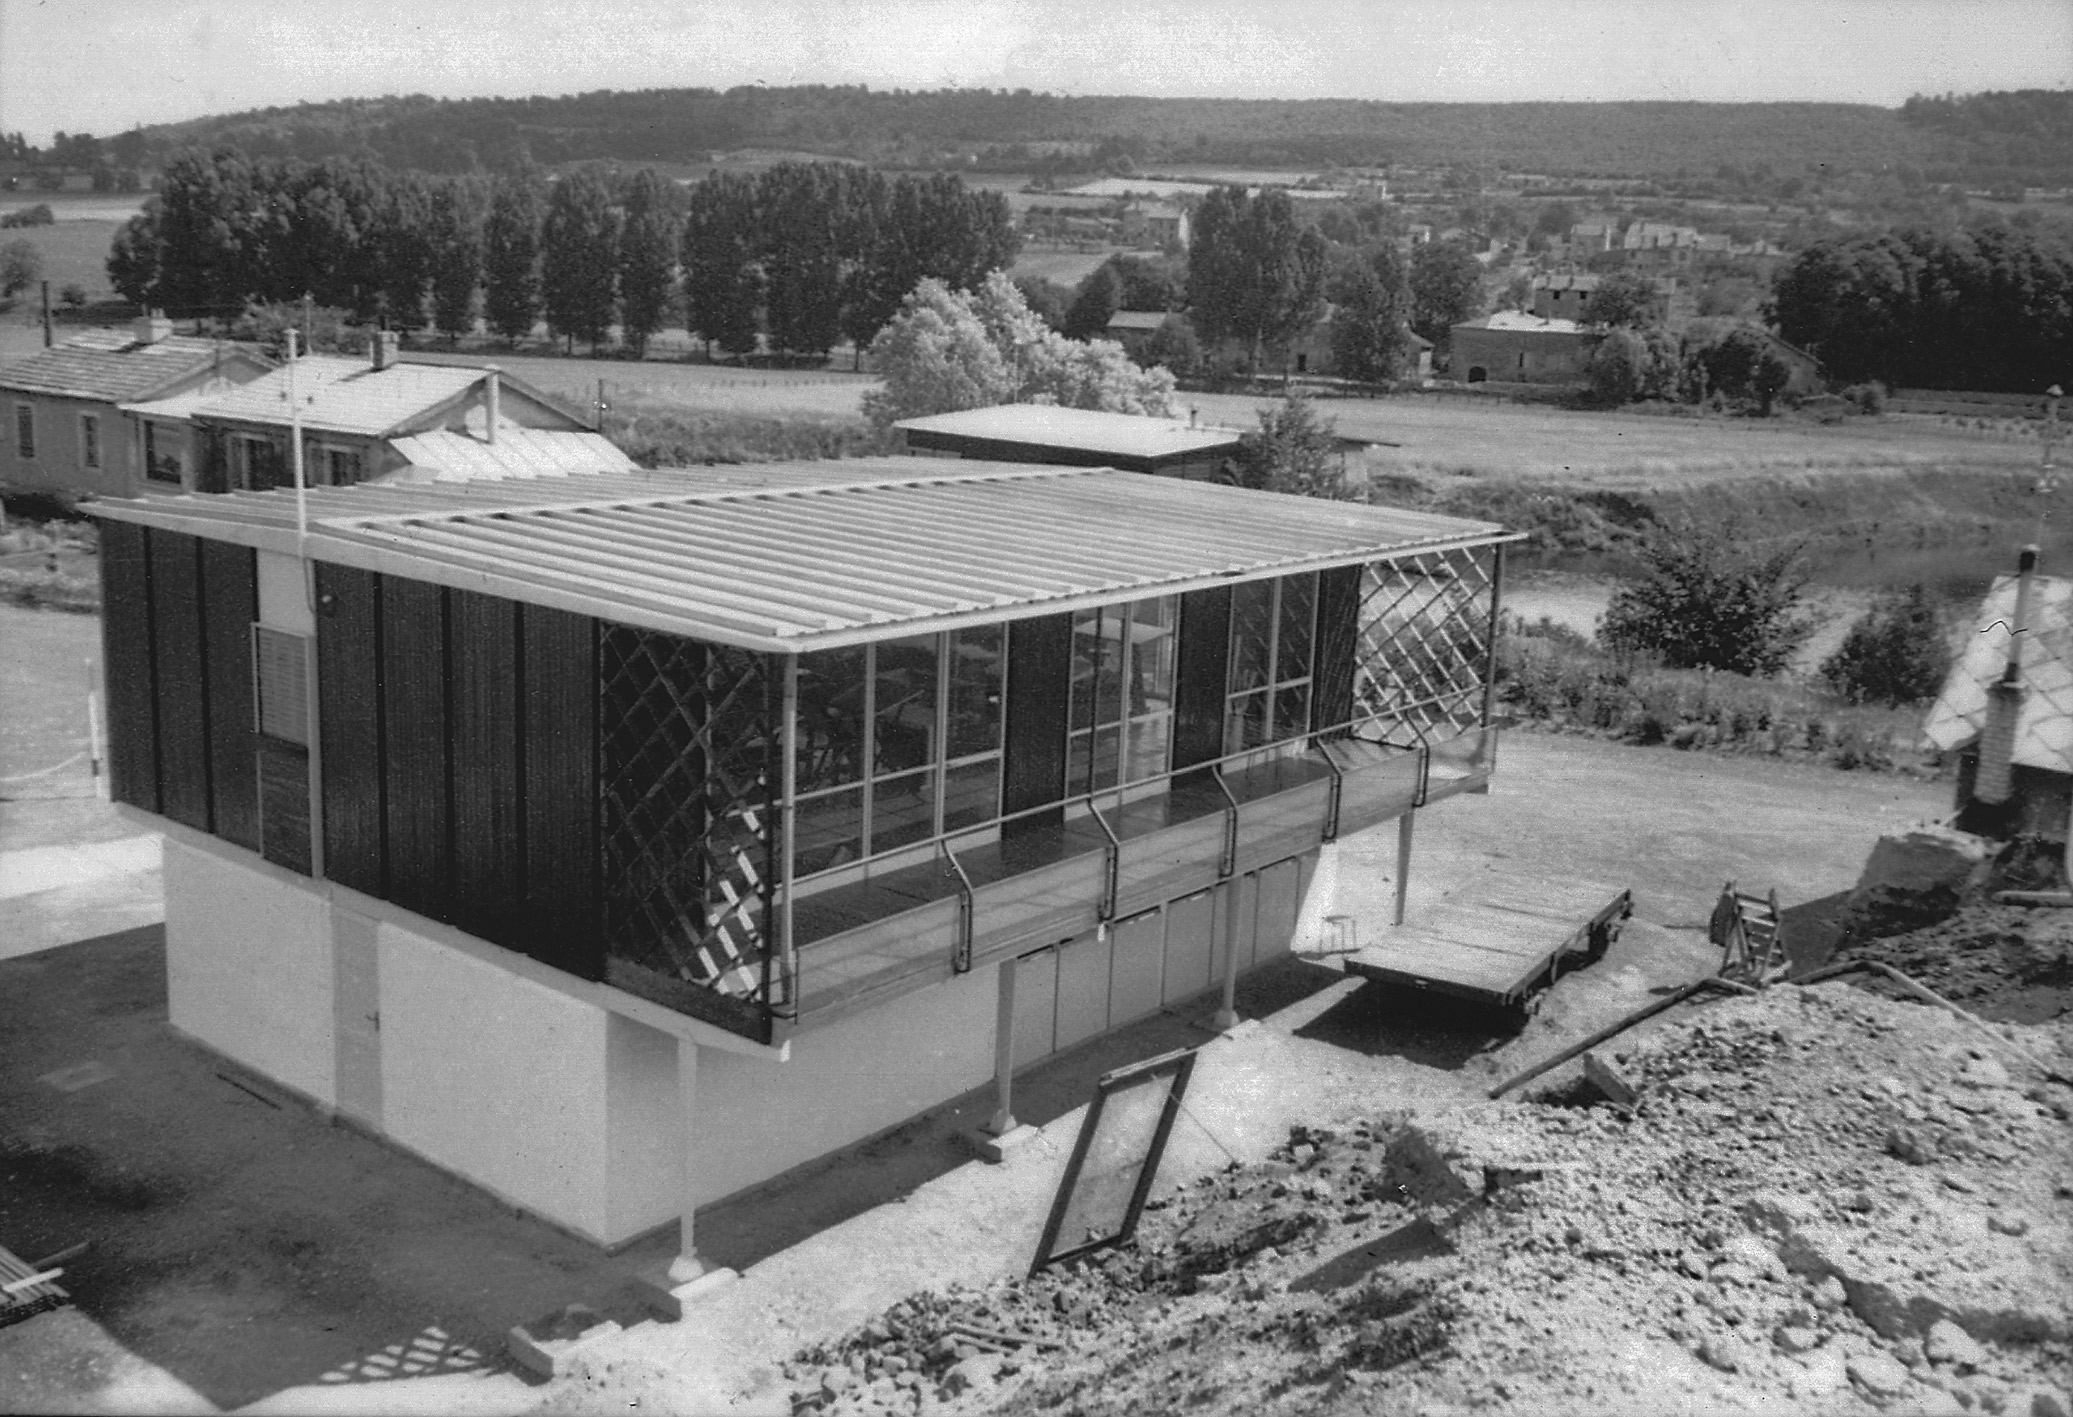 Ateliers Jean Prouvé design office. Assembling the 8x12 building on site, Ateliers Jean Prouvé, Maxéville, 1952.